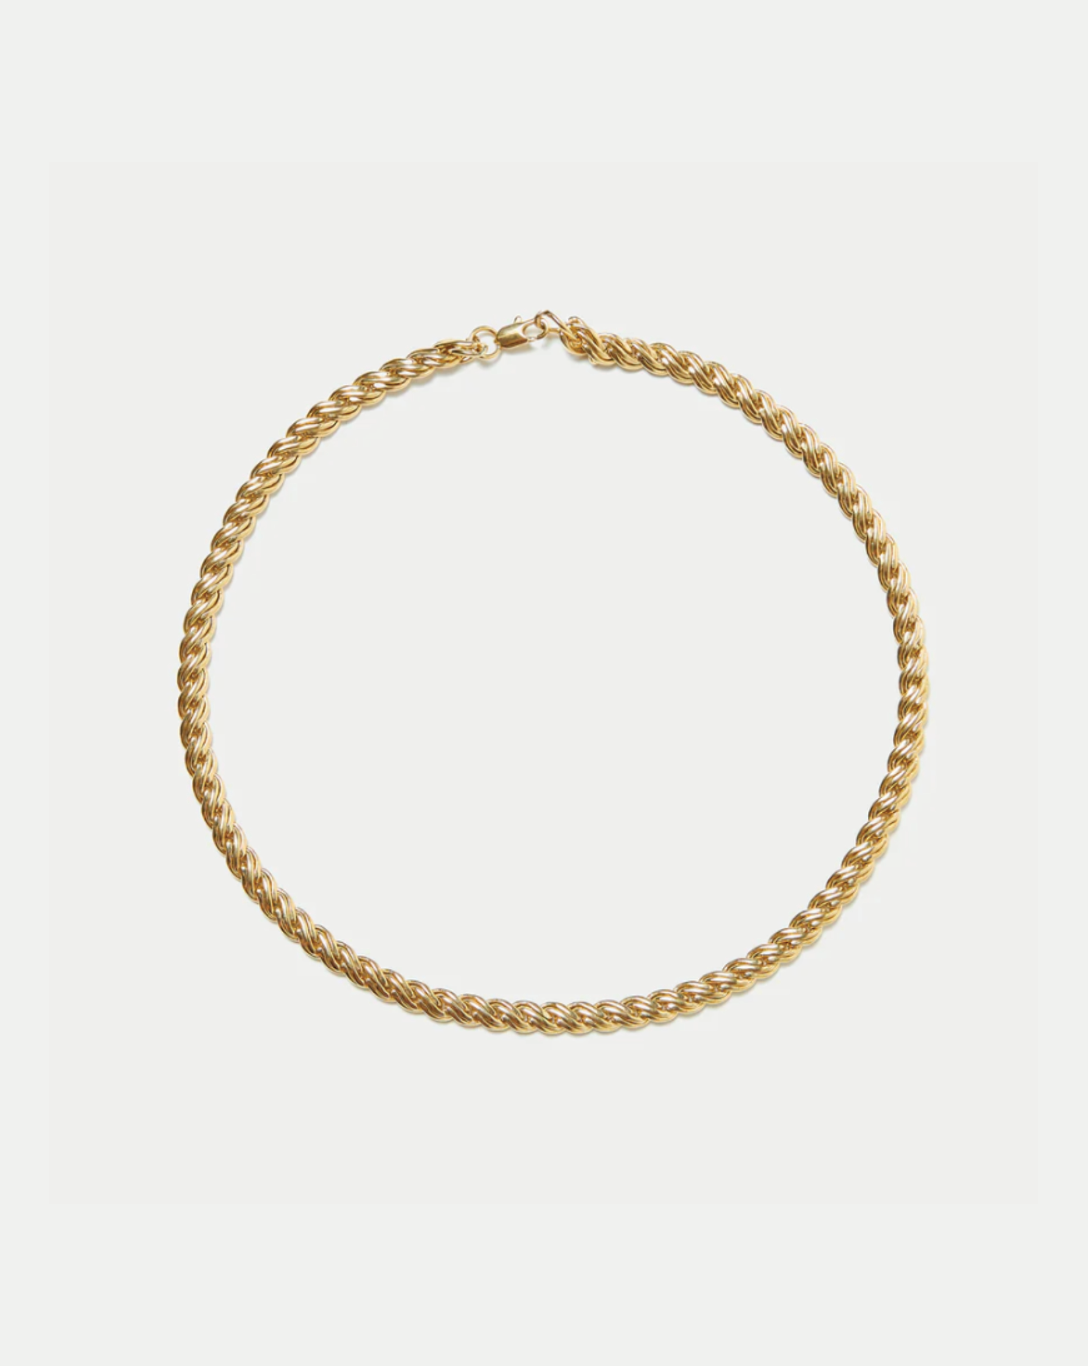 Allegra Lock Chain Necklace